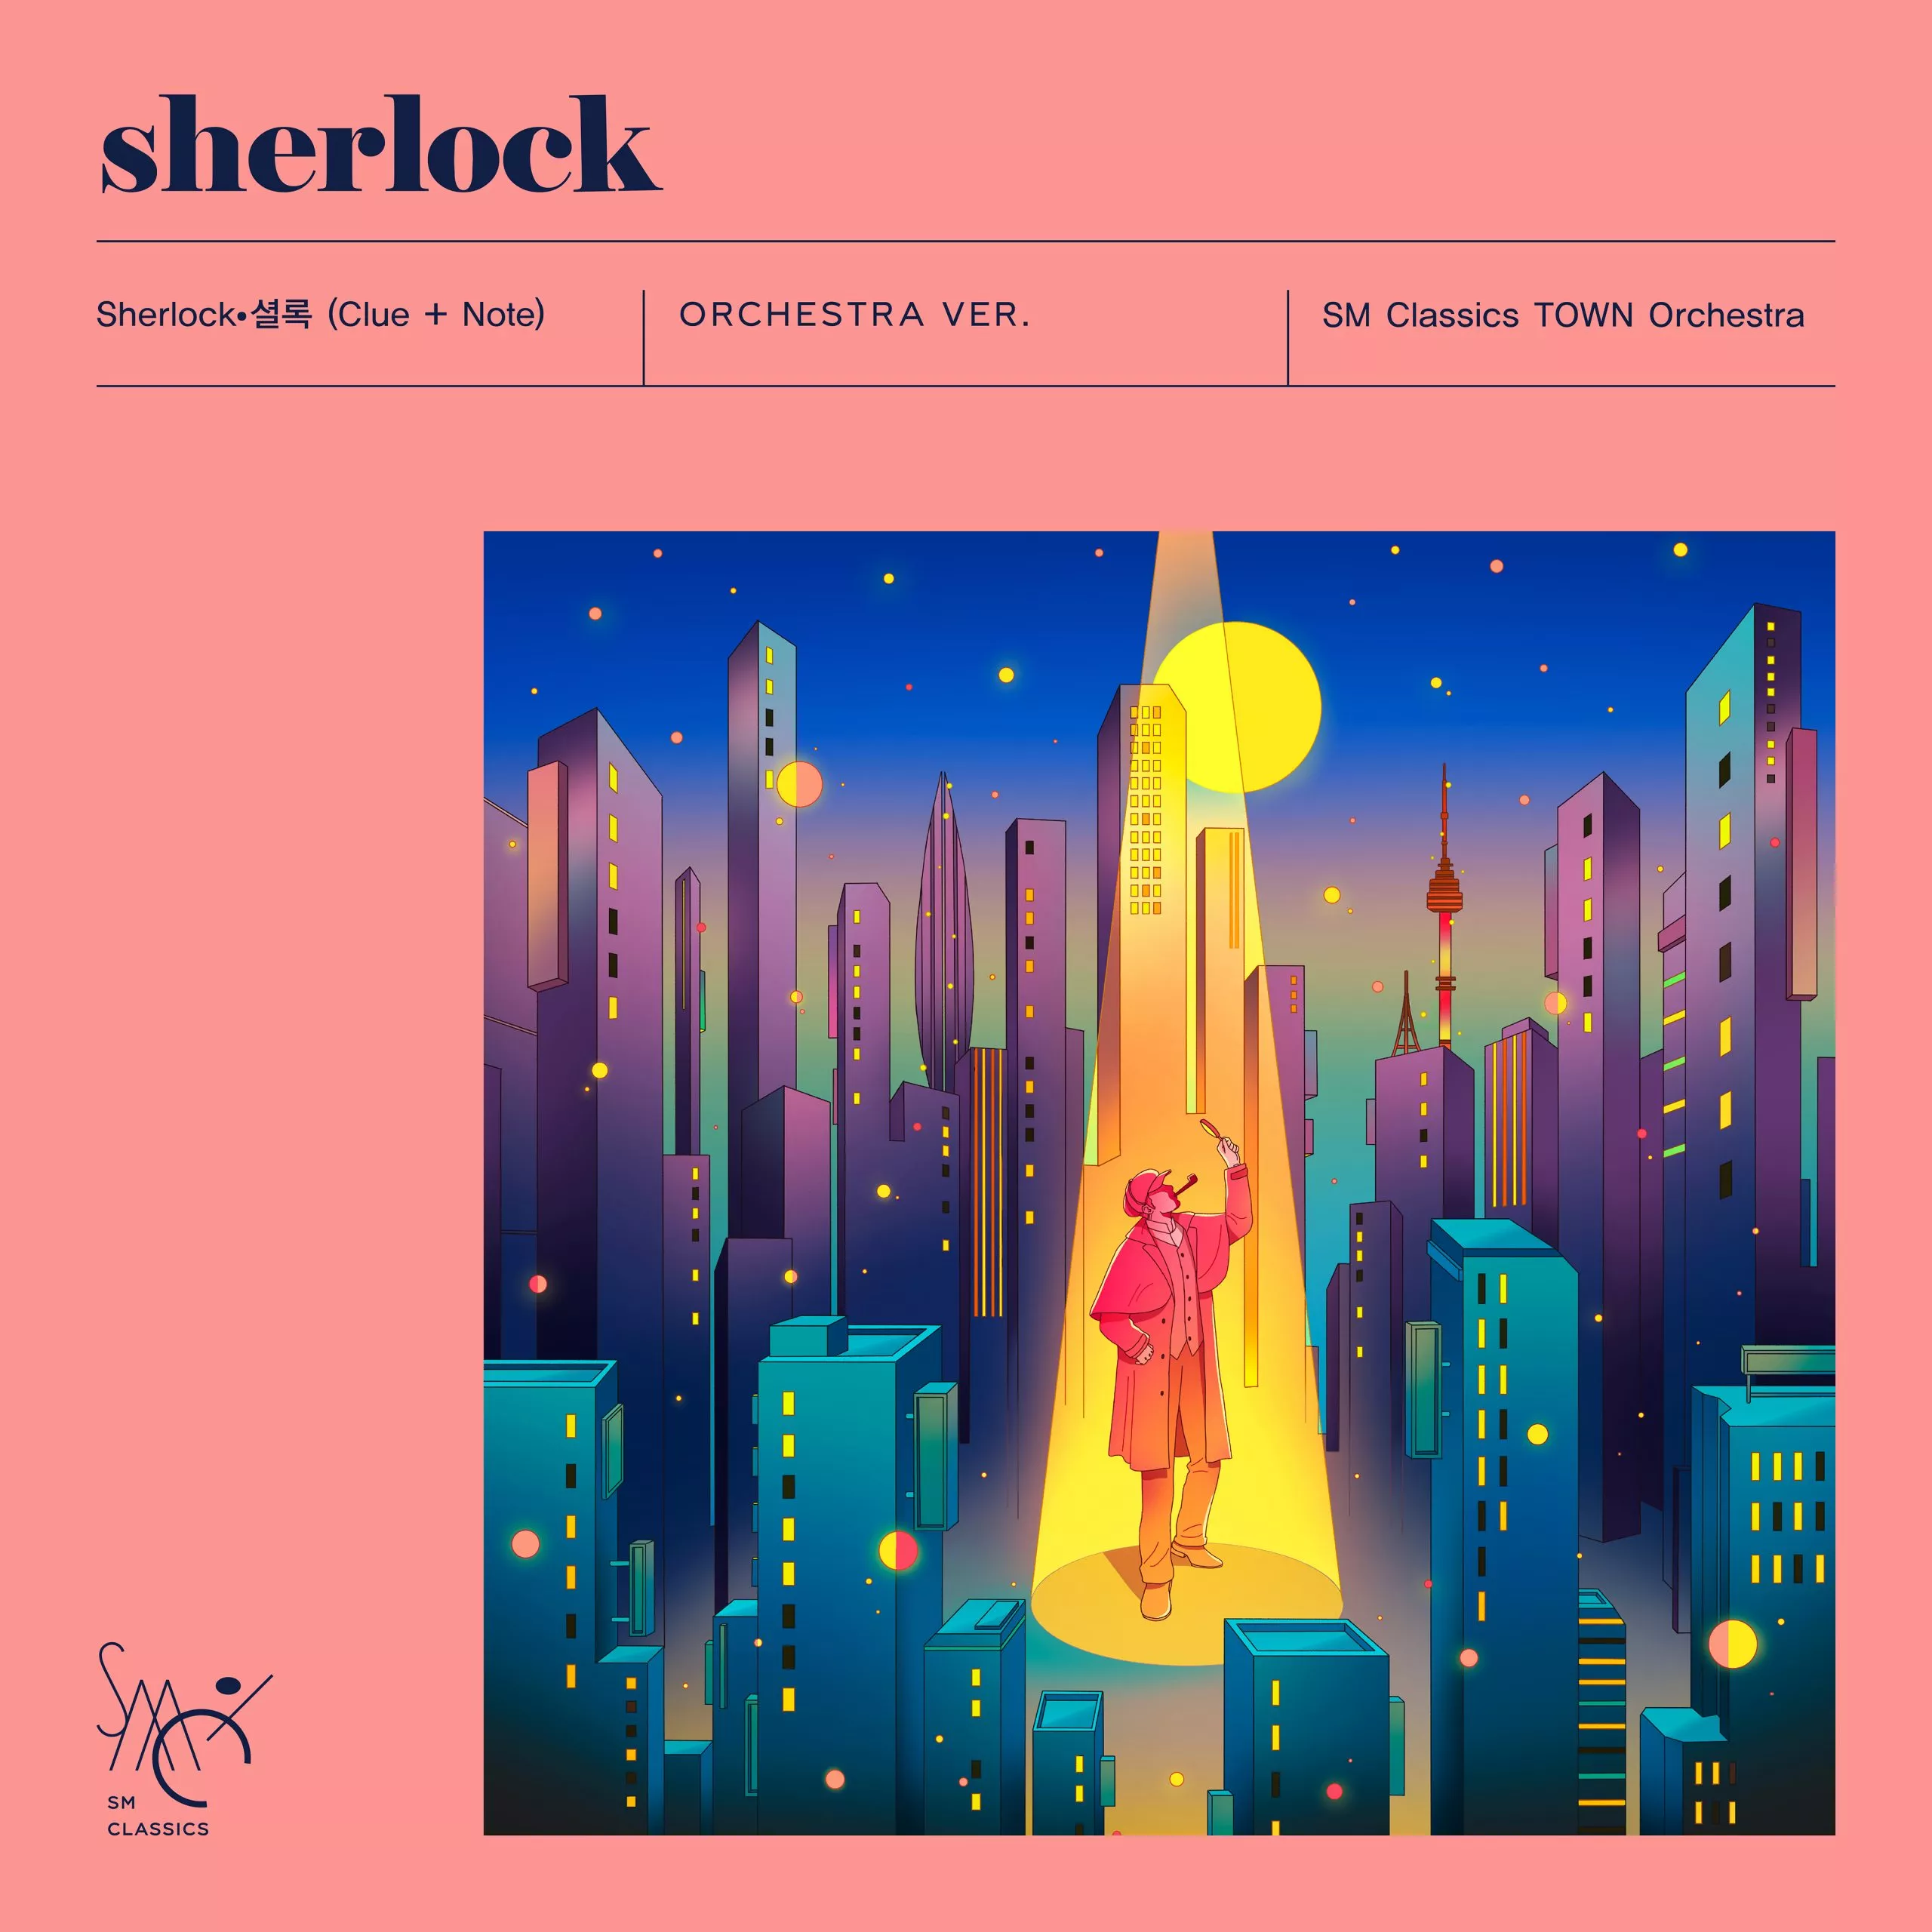 SHINee выпустят оркестровую версию "Sherlock" в честь 15-летия дебюта